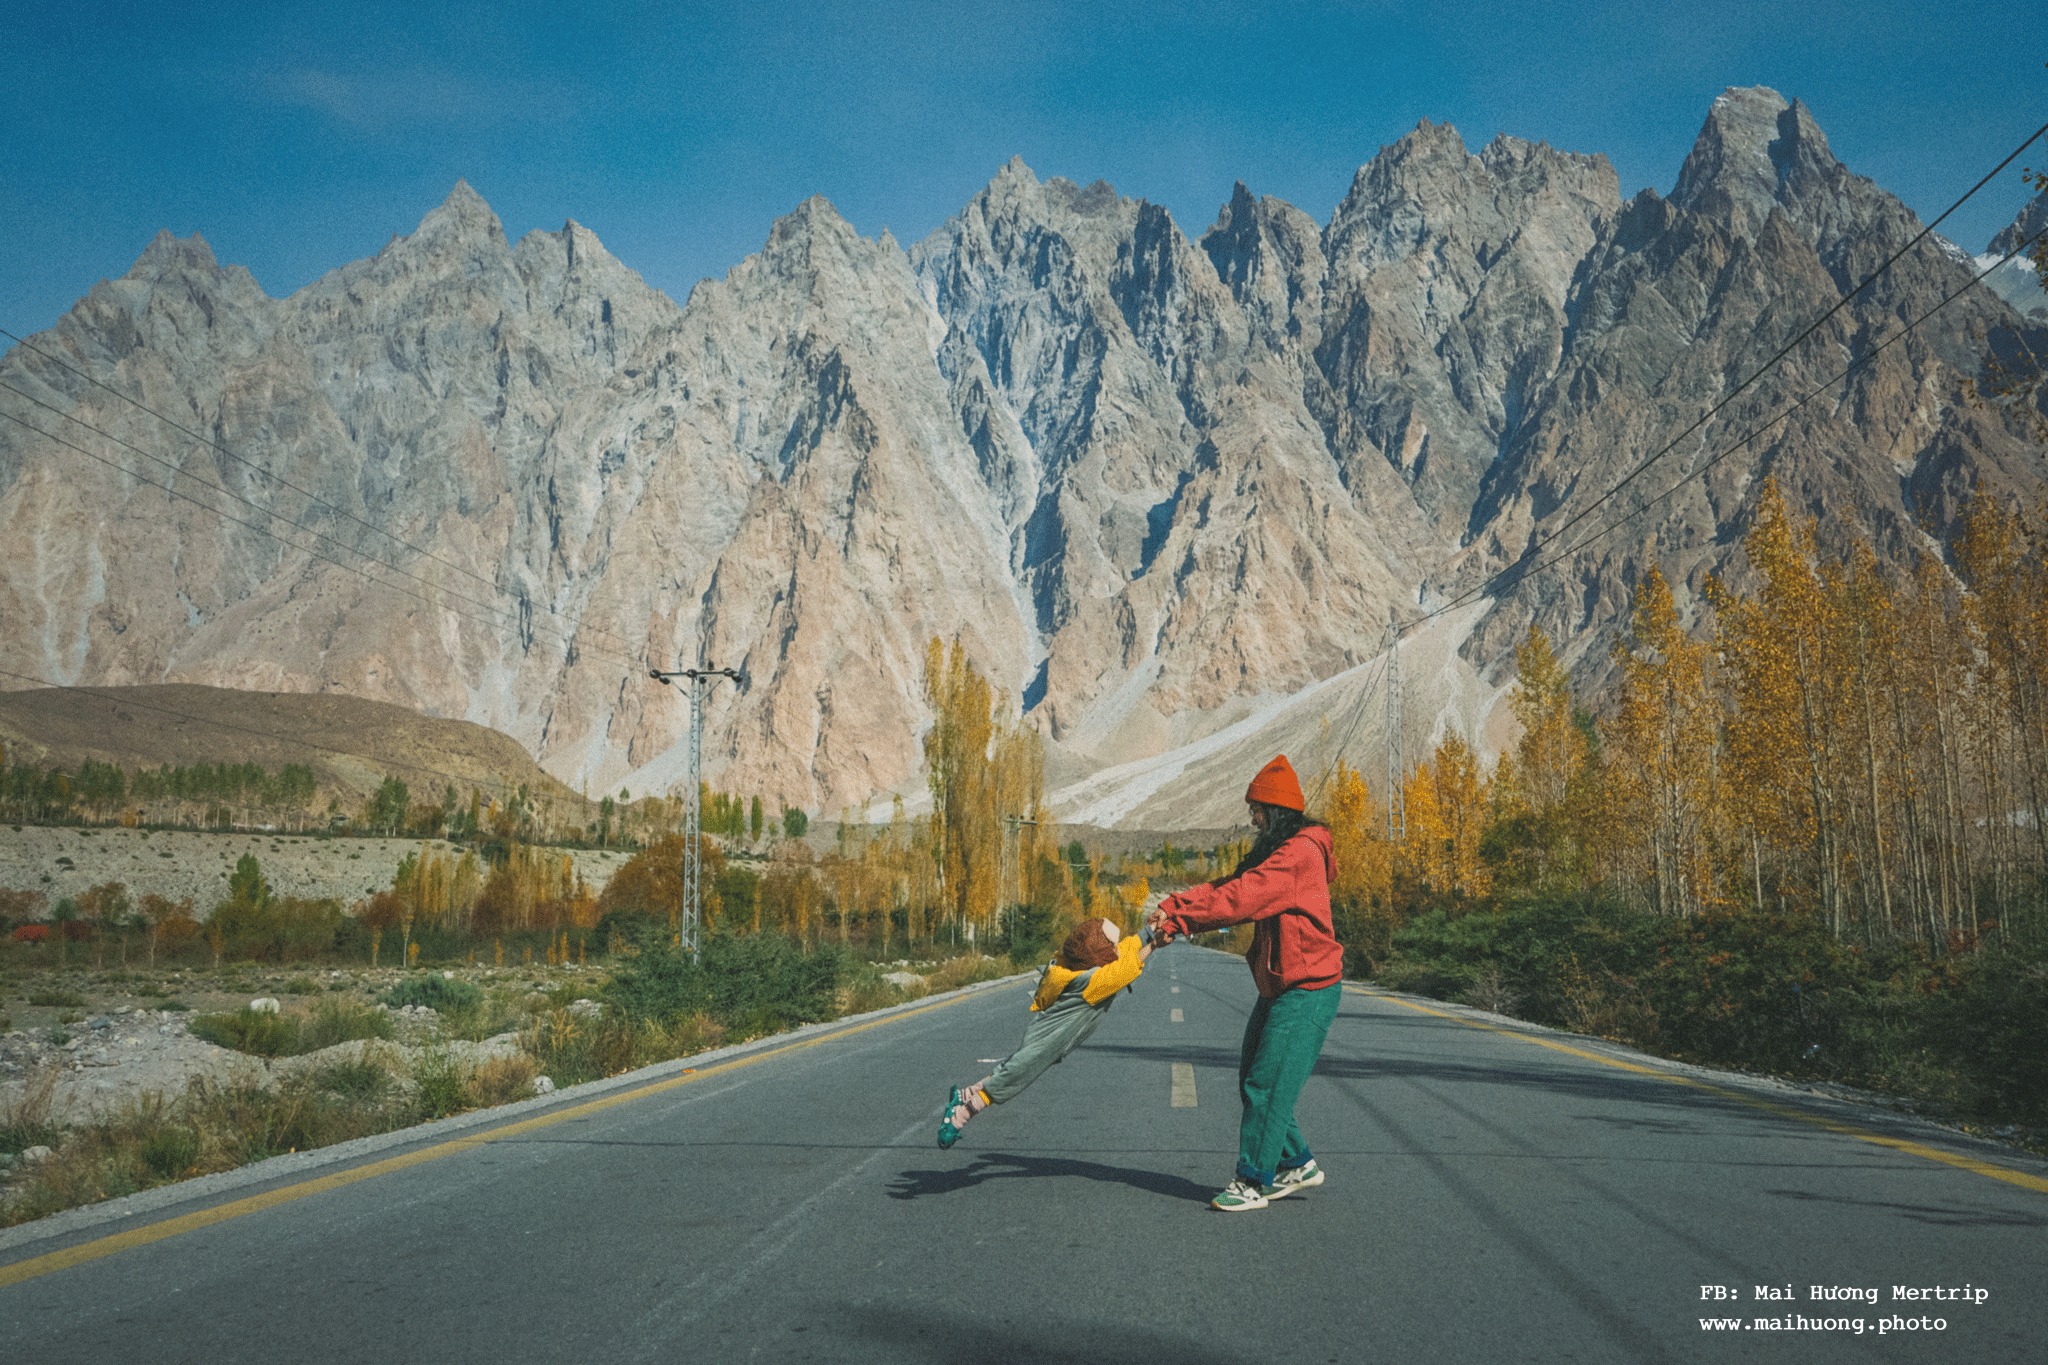 Tuần này xem ảnh của ai: du lịch Pakistan 18 ngày của bé Mỡ 3t với mẹ Mai Hương